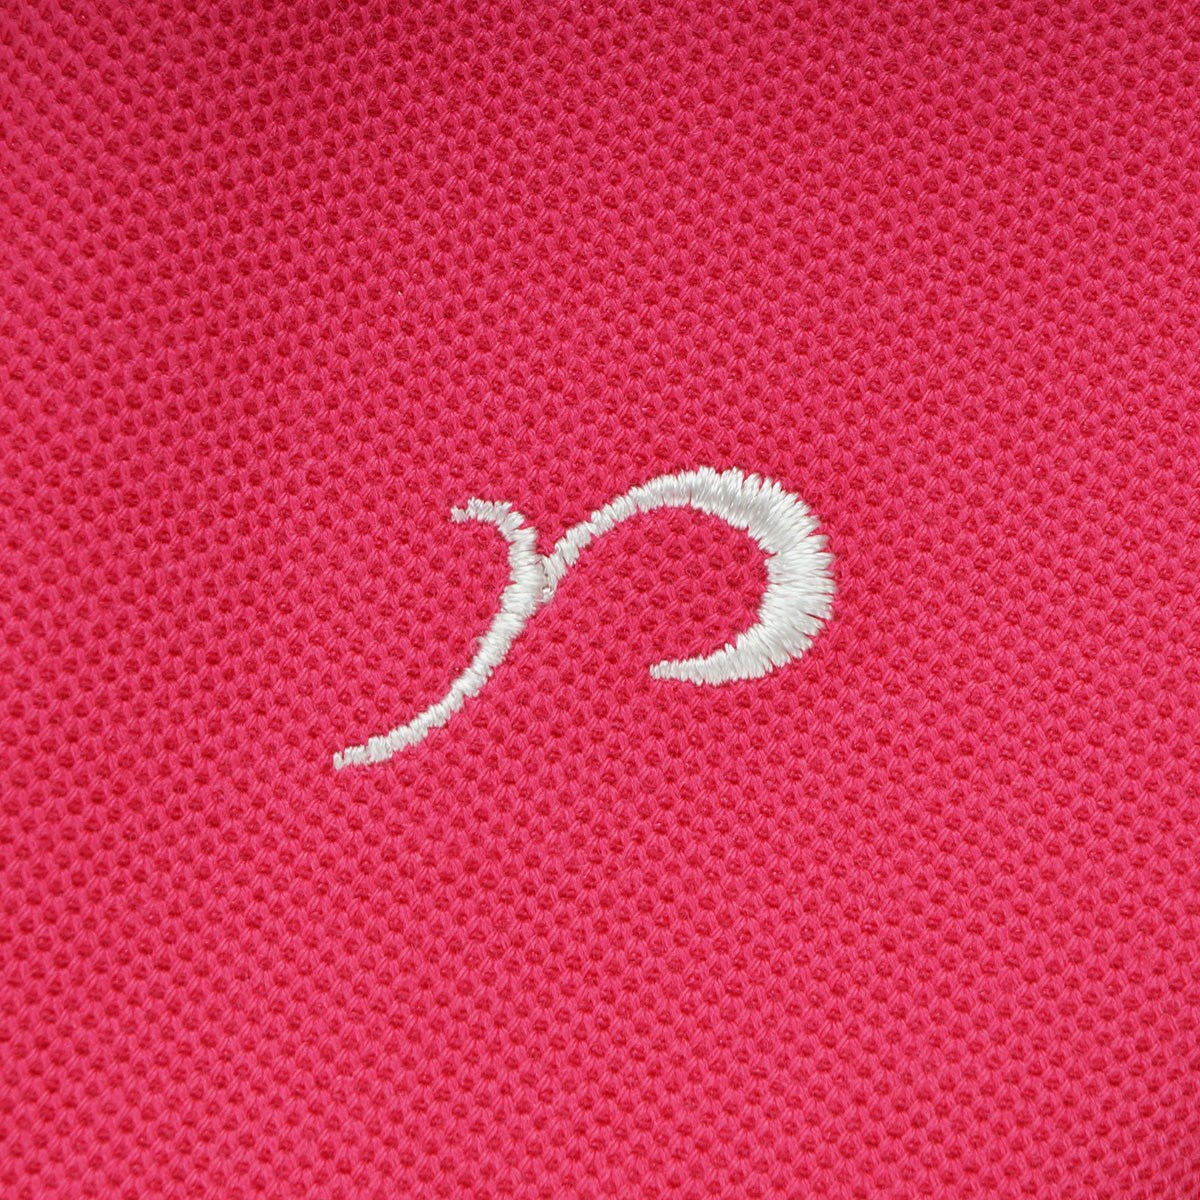 Dショッピング リエンダ Rienda Suelta Rマーク刺繍ノースリーブポロシャツ S ローズピンク レディス カテゴリ ポロシャツ シャツの販売できる商品 Gdoゴルフショップ ドコモの通販サイト